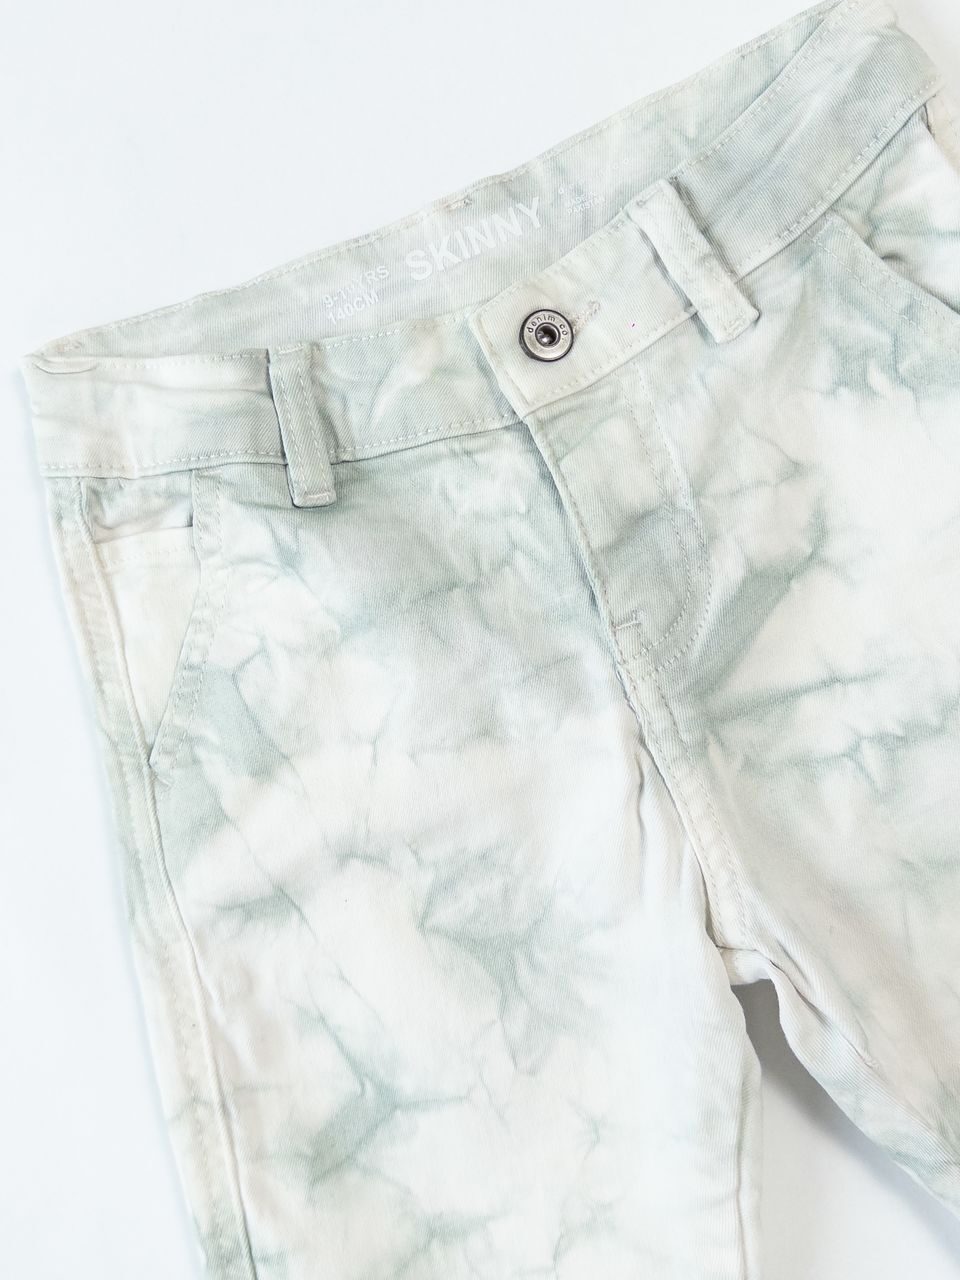 Шорты скини джинсовые для мальчика с регулировкой в талии цвет белый/зеленый на рост 140 см 9-10 лет Primark (имеется незначительное пятнышко на кармане сзади)